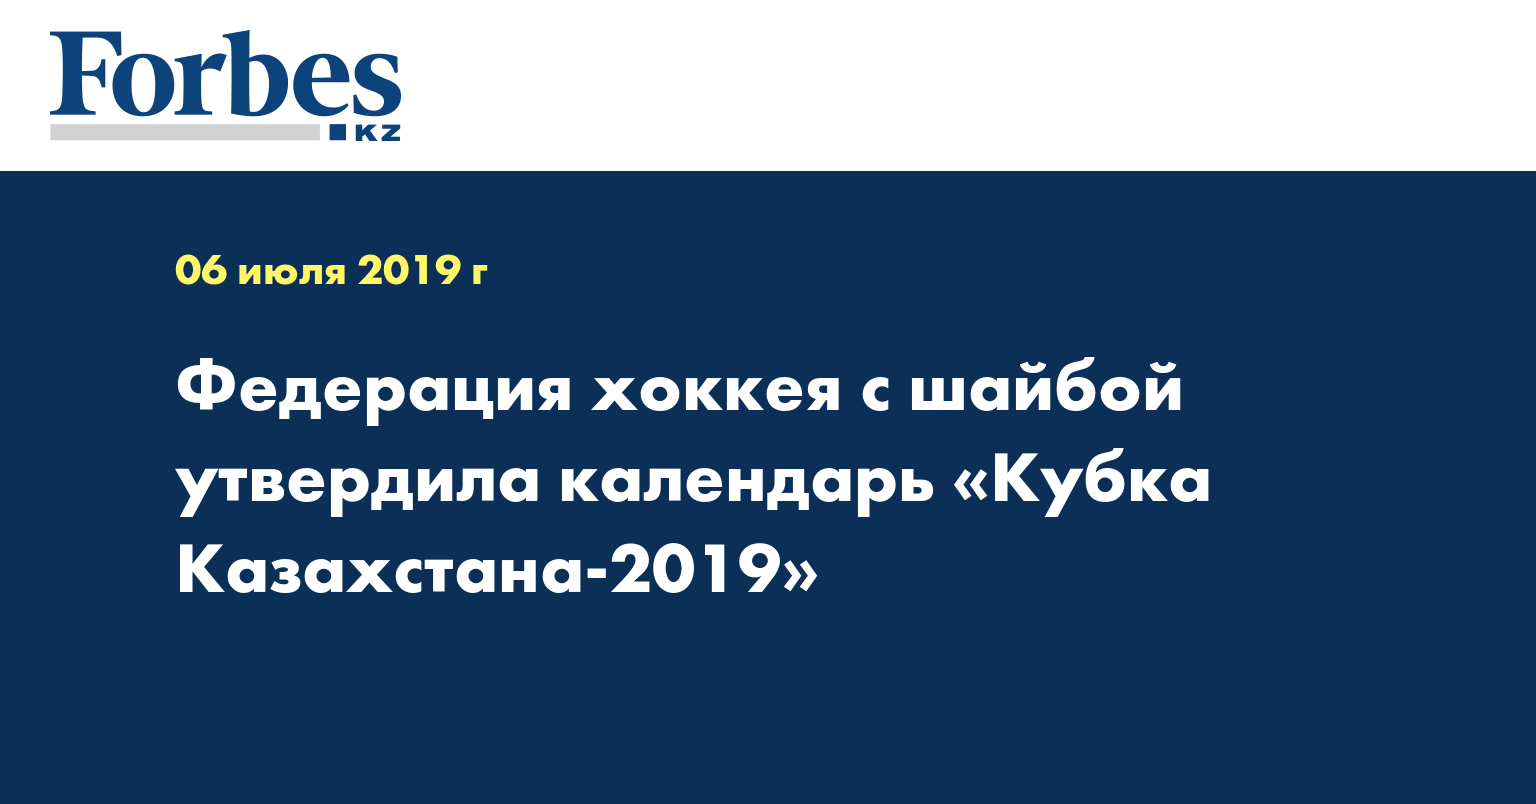 Федерация хоккея с шайбой утвердила календарь «Кубка Казахстана-2019» 